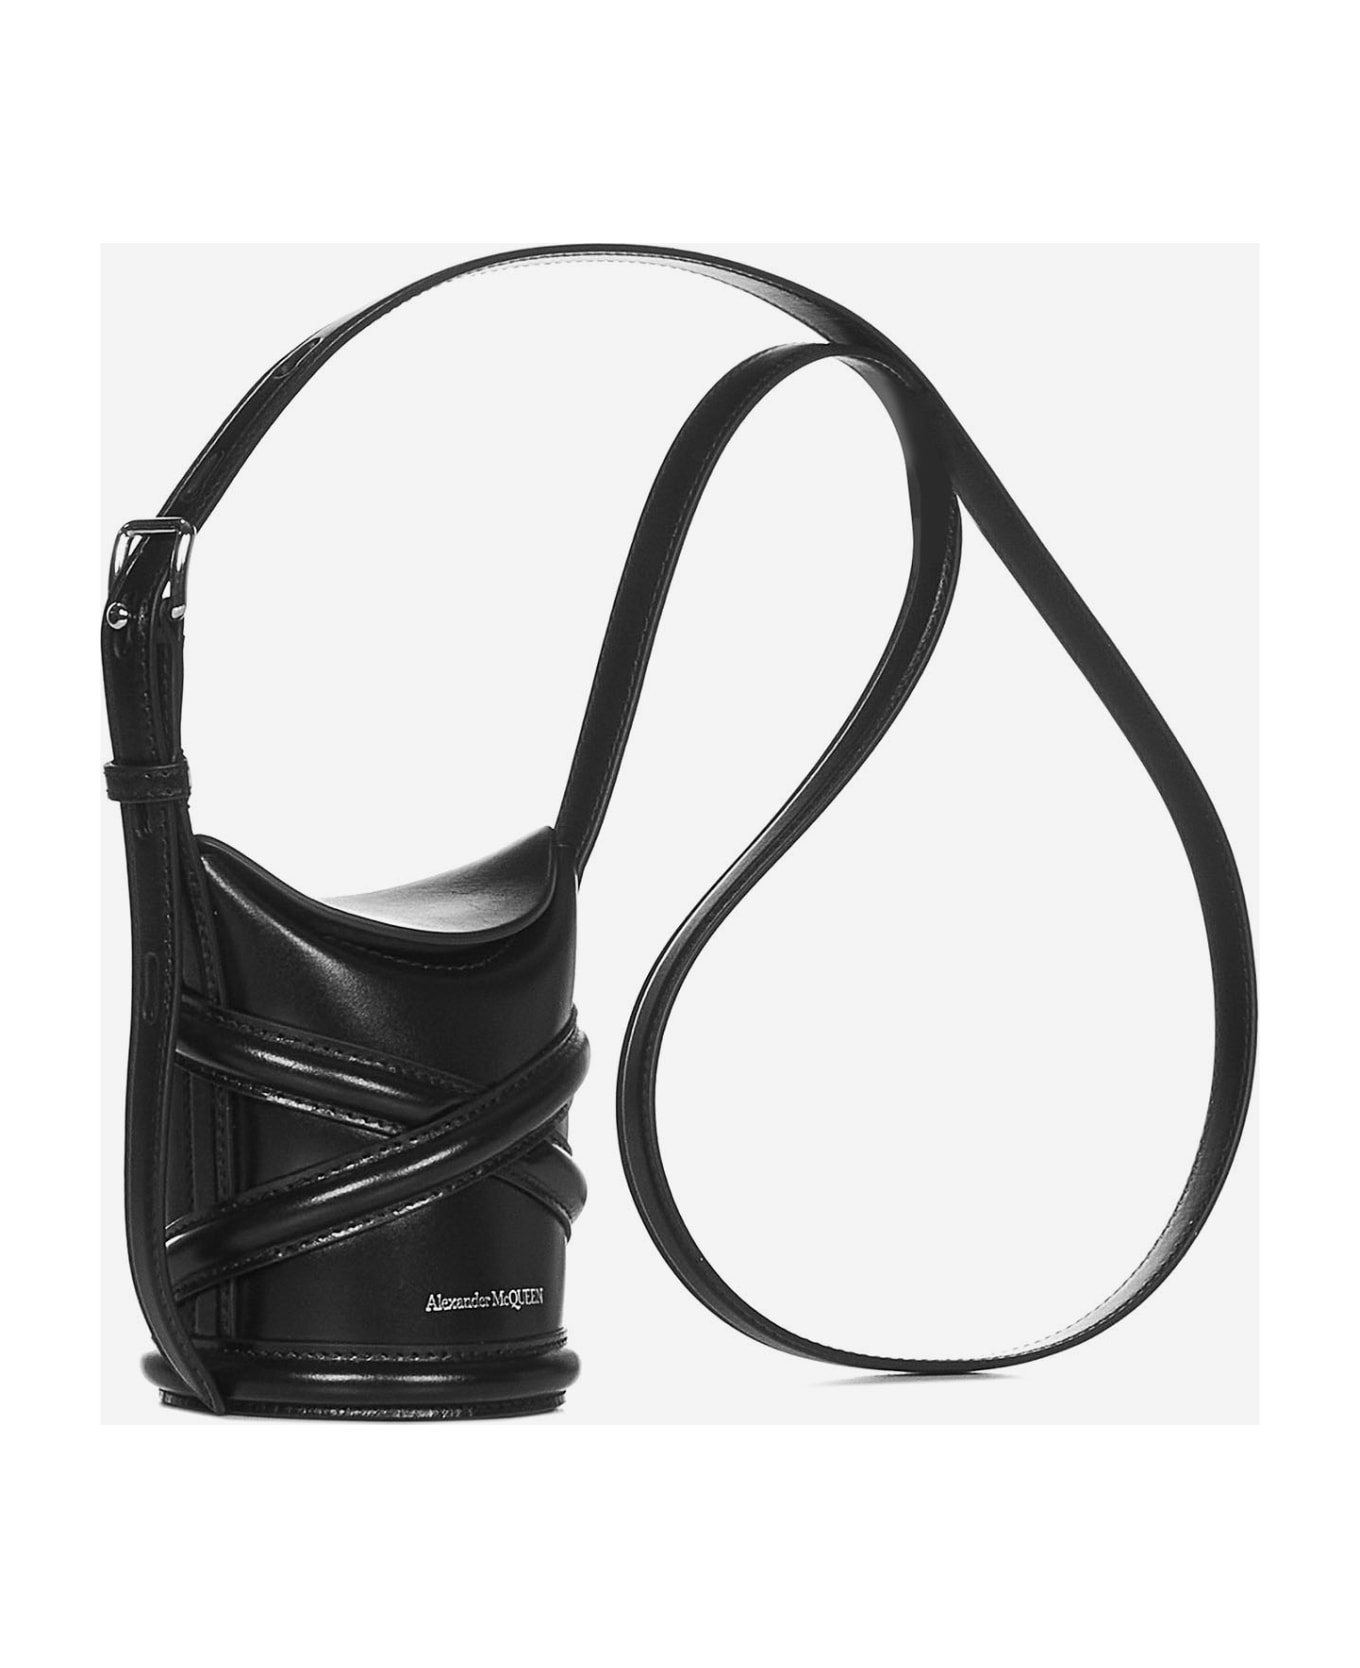 Alexander McQueen The Curve Bucket Bag - Black